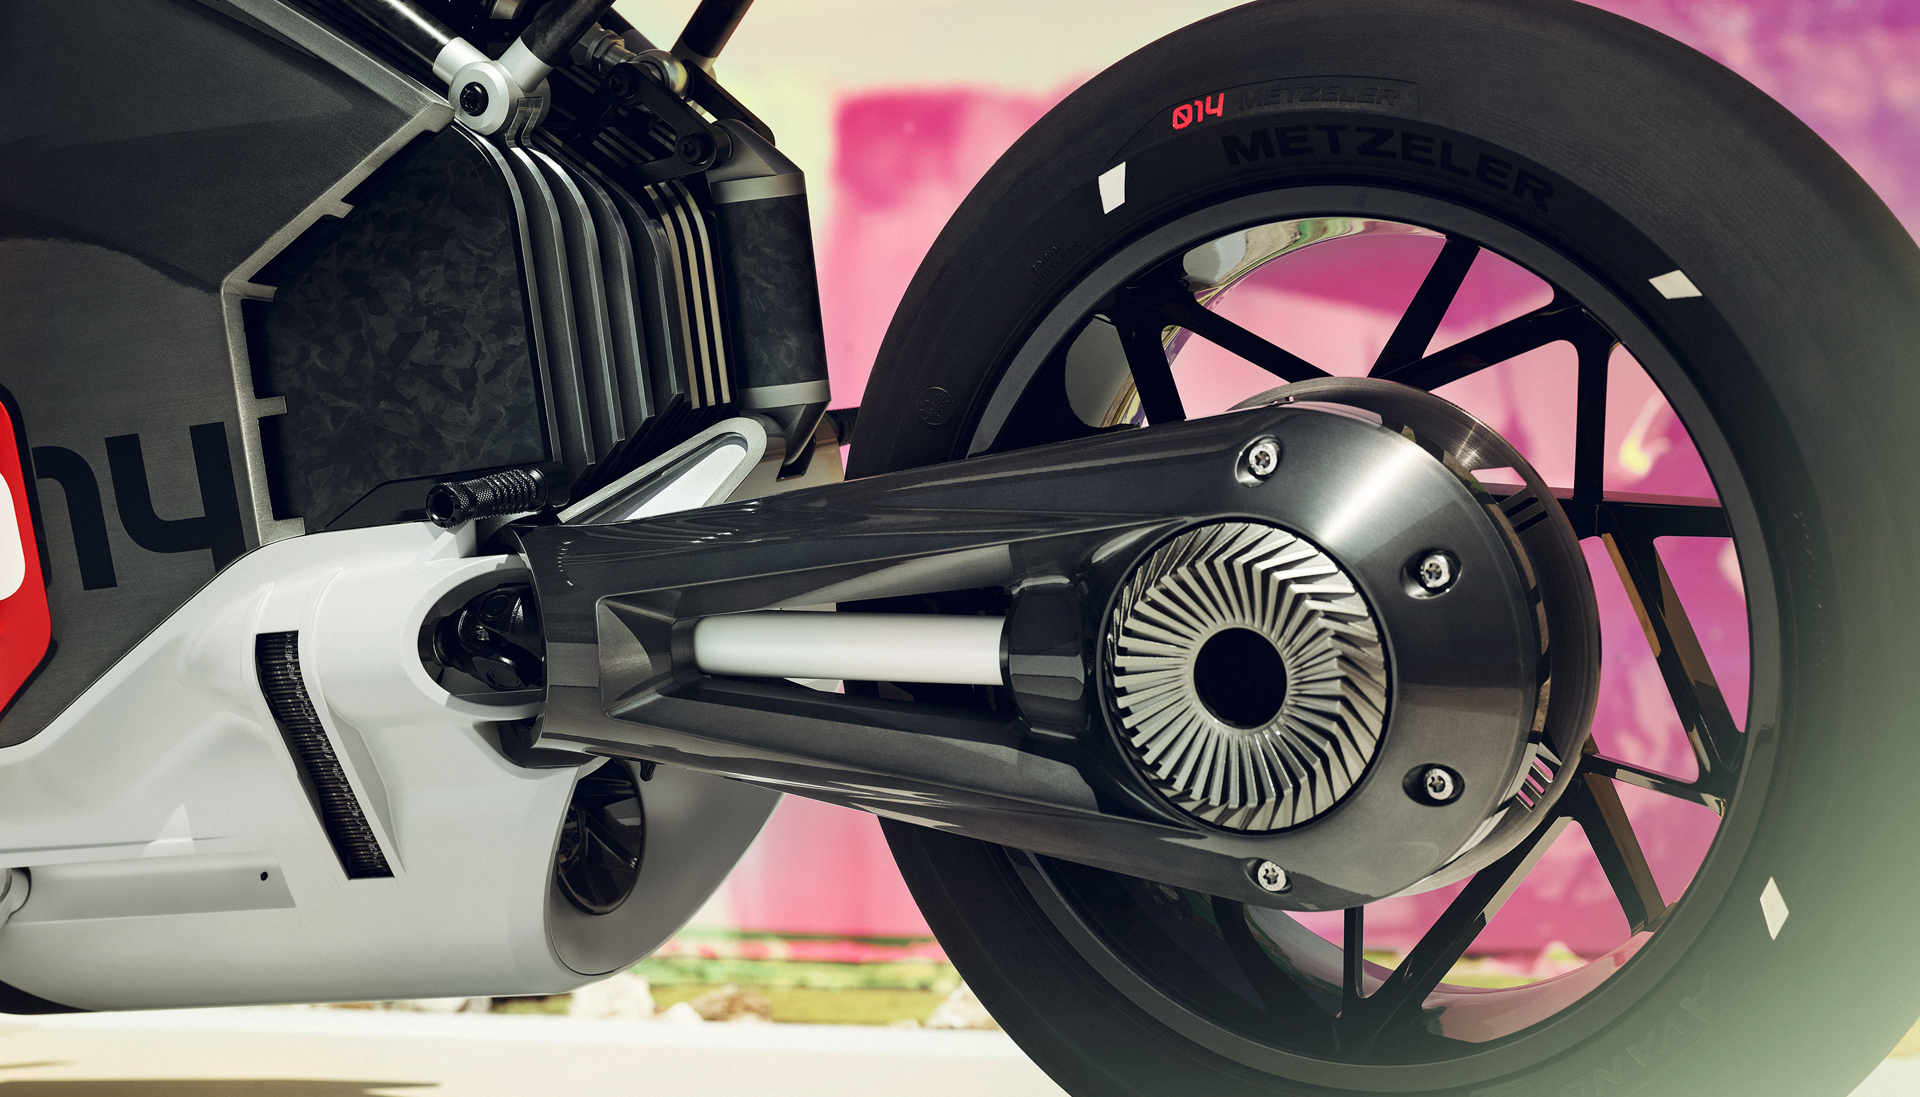 Vision DC Roadster - Ấn tượng xe naked-bike chạy điện của 